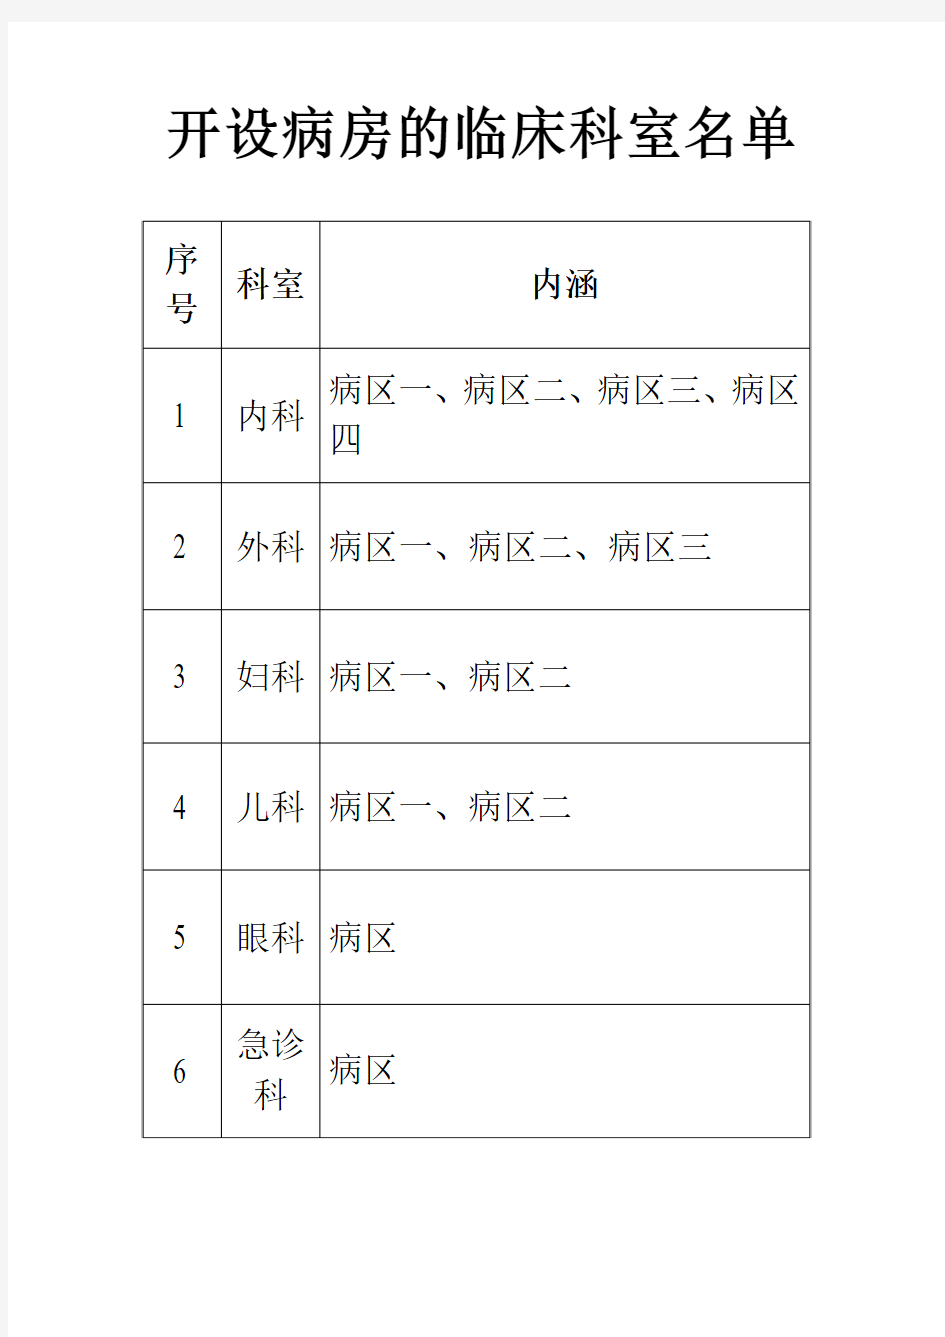 3.9.3中医综合治疗室名单